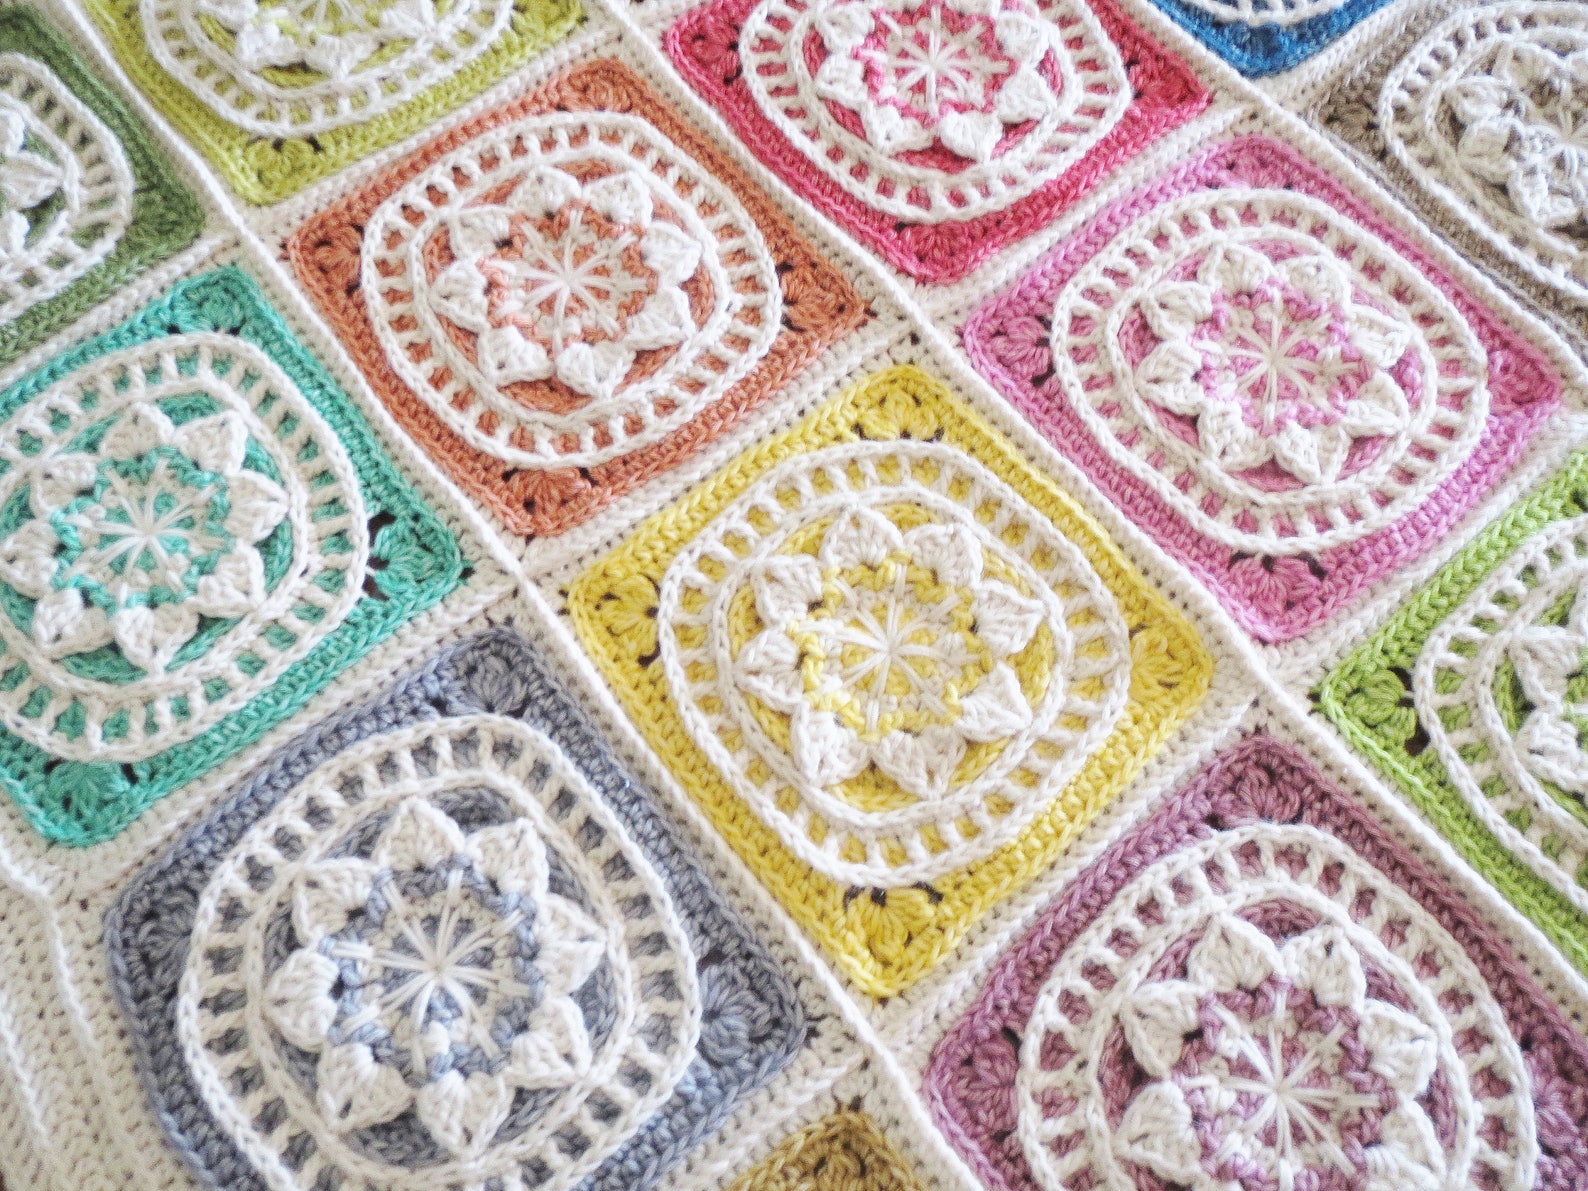 CROCHET BLANKET PATTERN Crochet Pattern Instant Download Pdf | Etsy